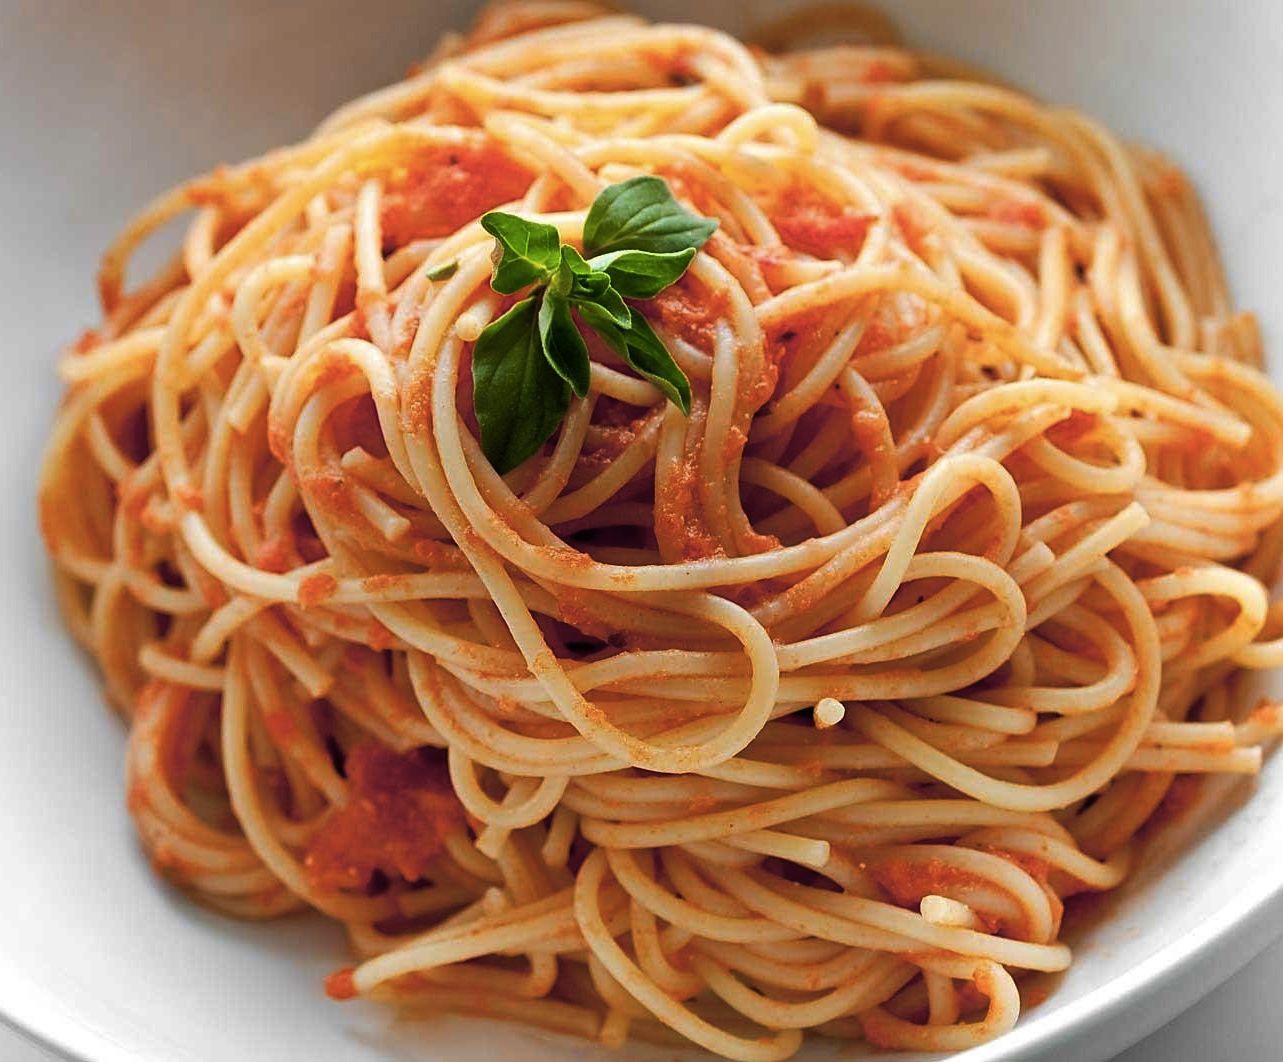 my favorite food is pasta